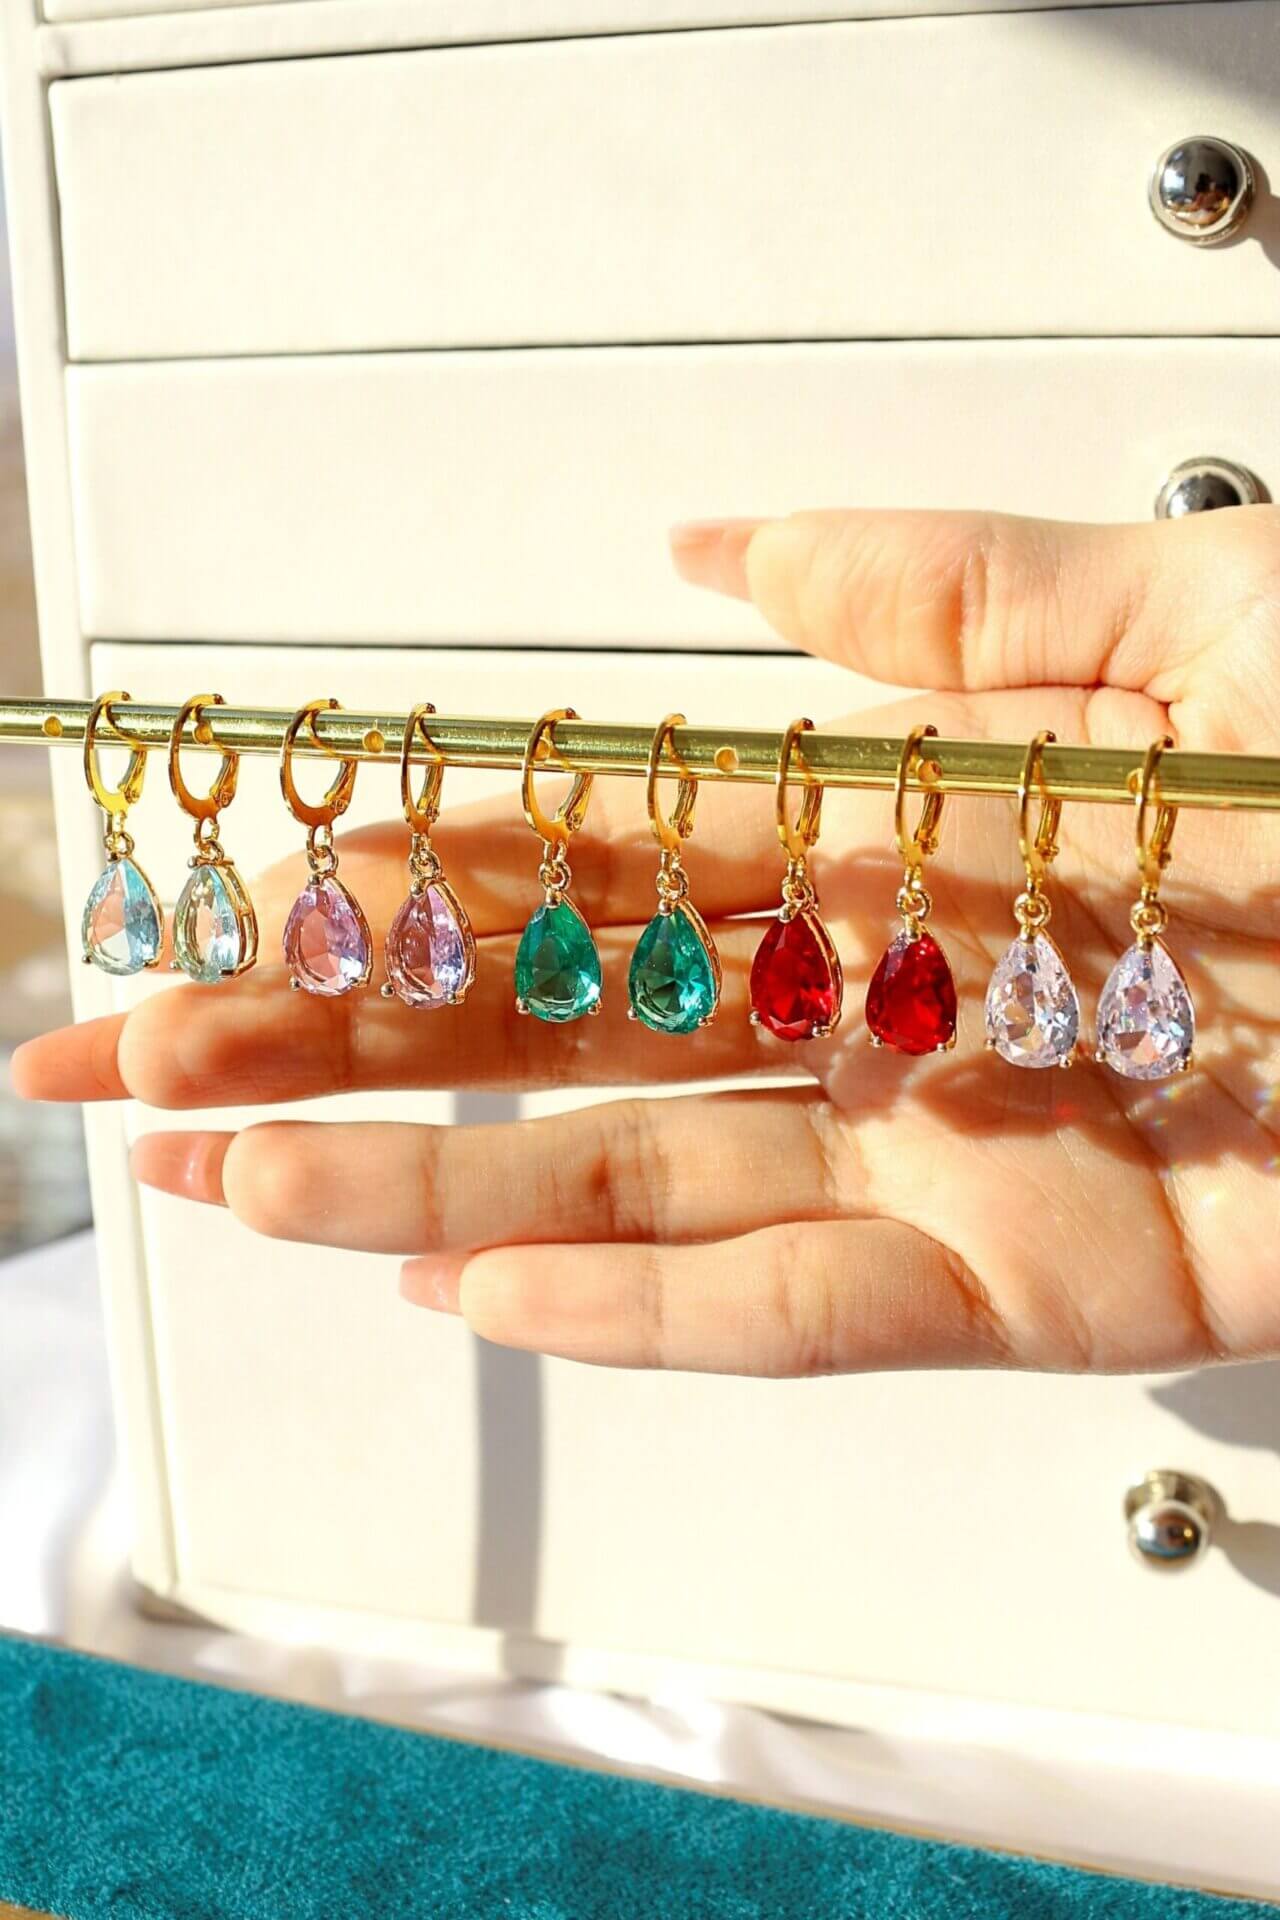 18 Karat rainbow teardrop charm hoop earrings